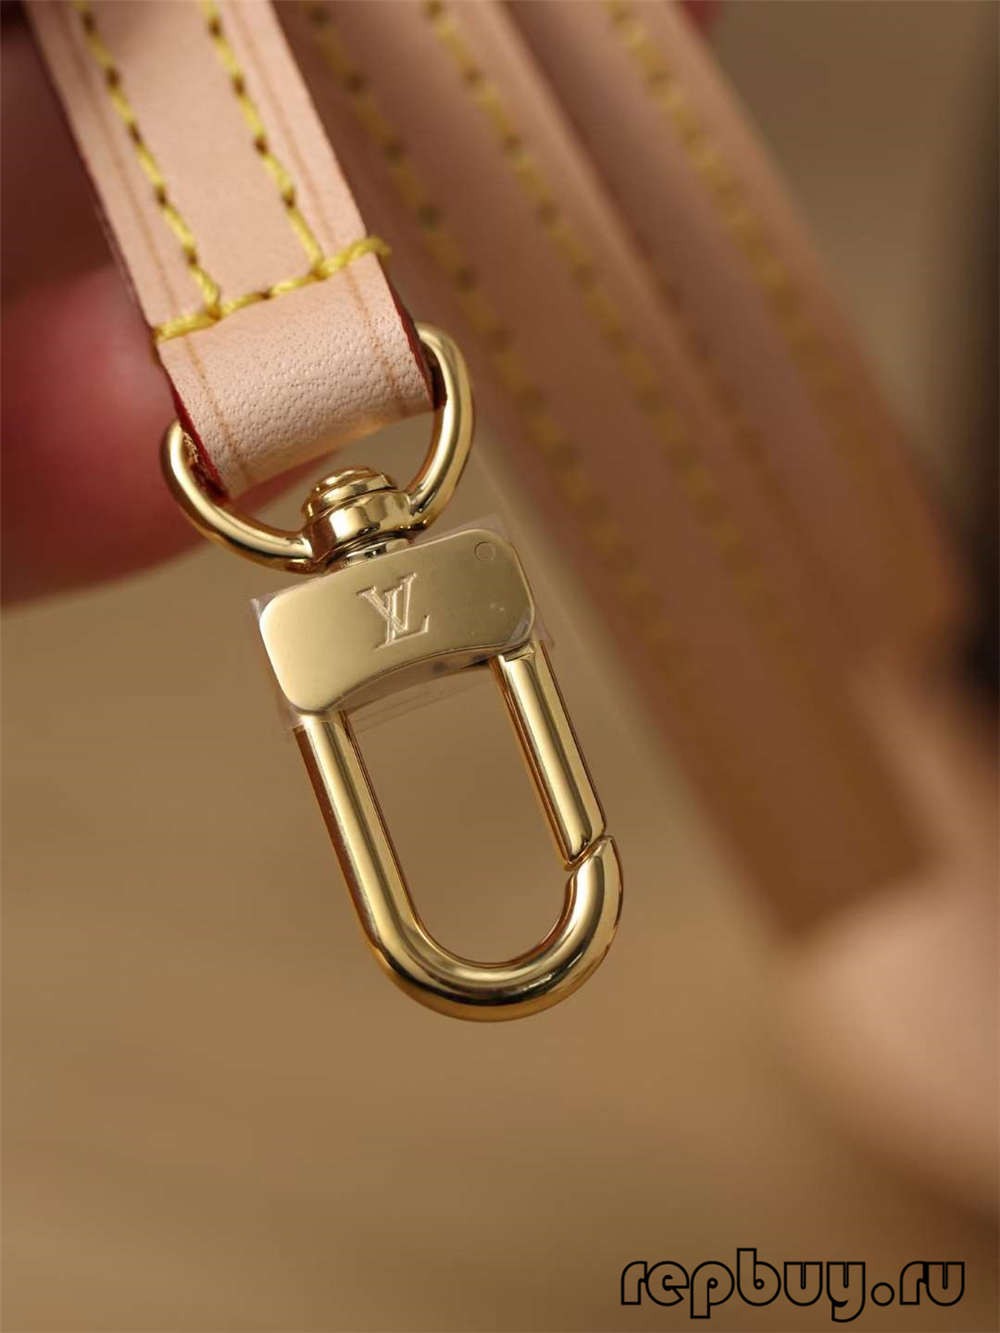 Louis Vuitton M53152 Alma BB أعلى جودة متماثلة الحقائب (2022 محدث) - أفضل جودة حقيبة لويس فويتون وهمية على الإنترنت ، حقيبة مصمم طبق الأصل ru